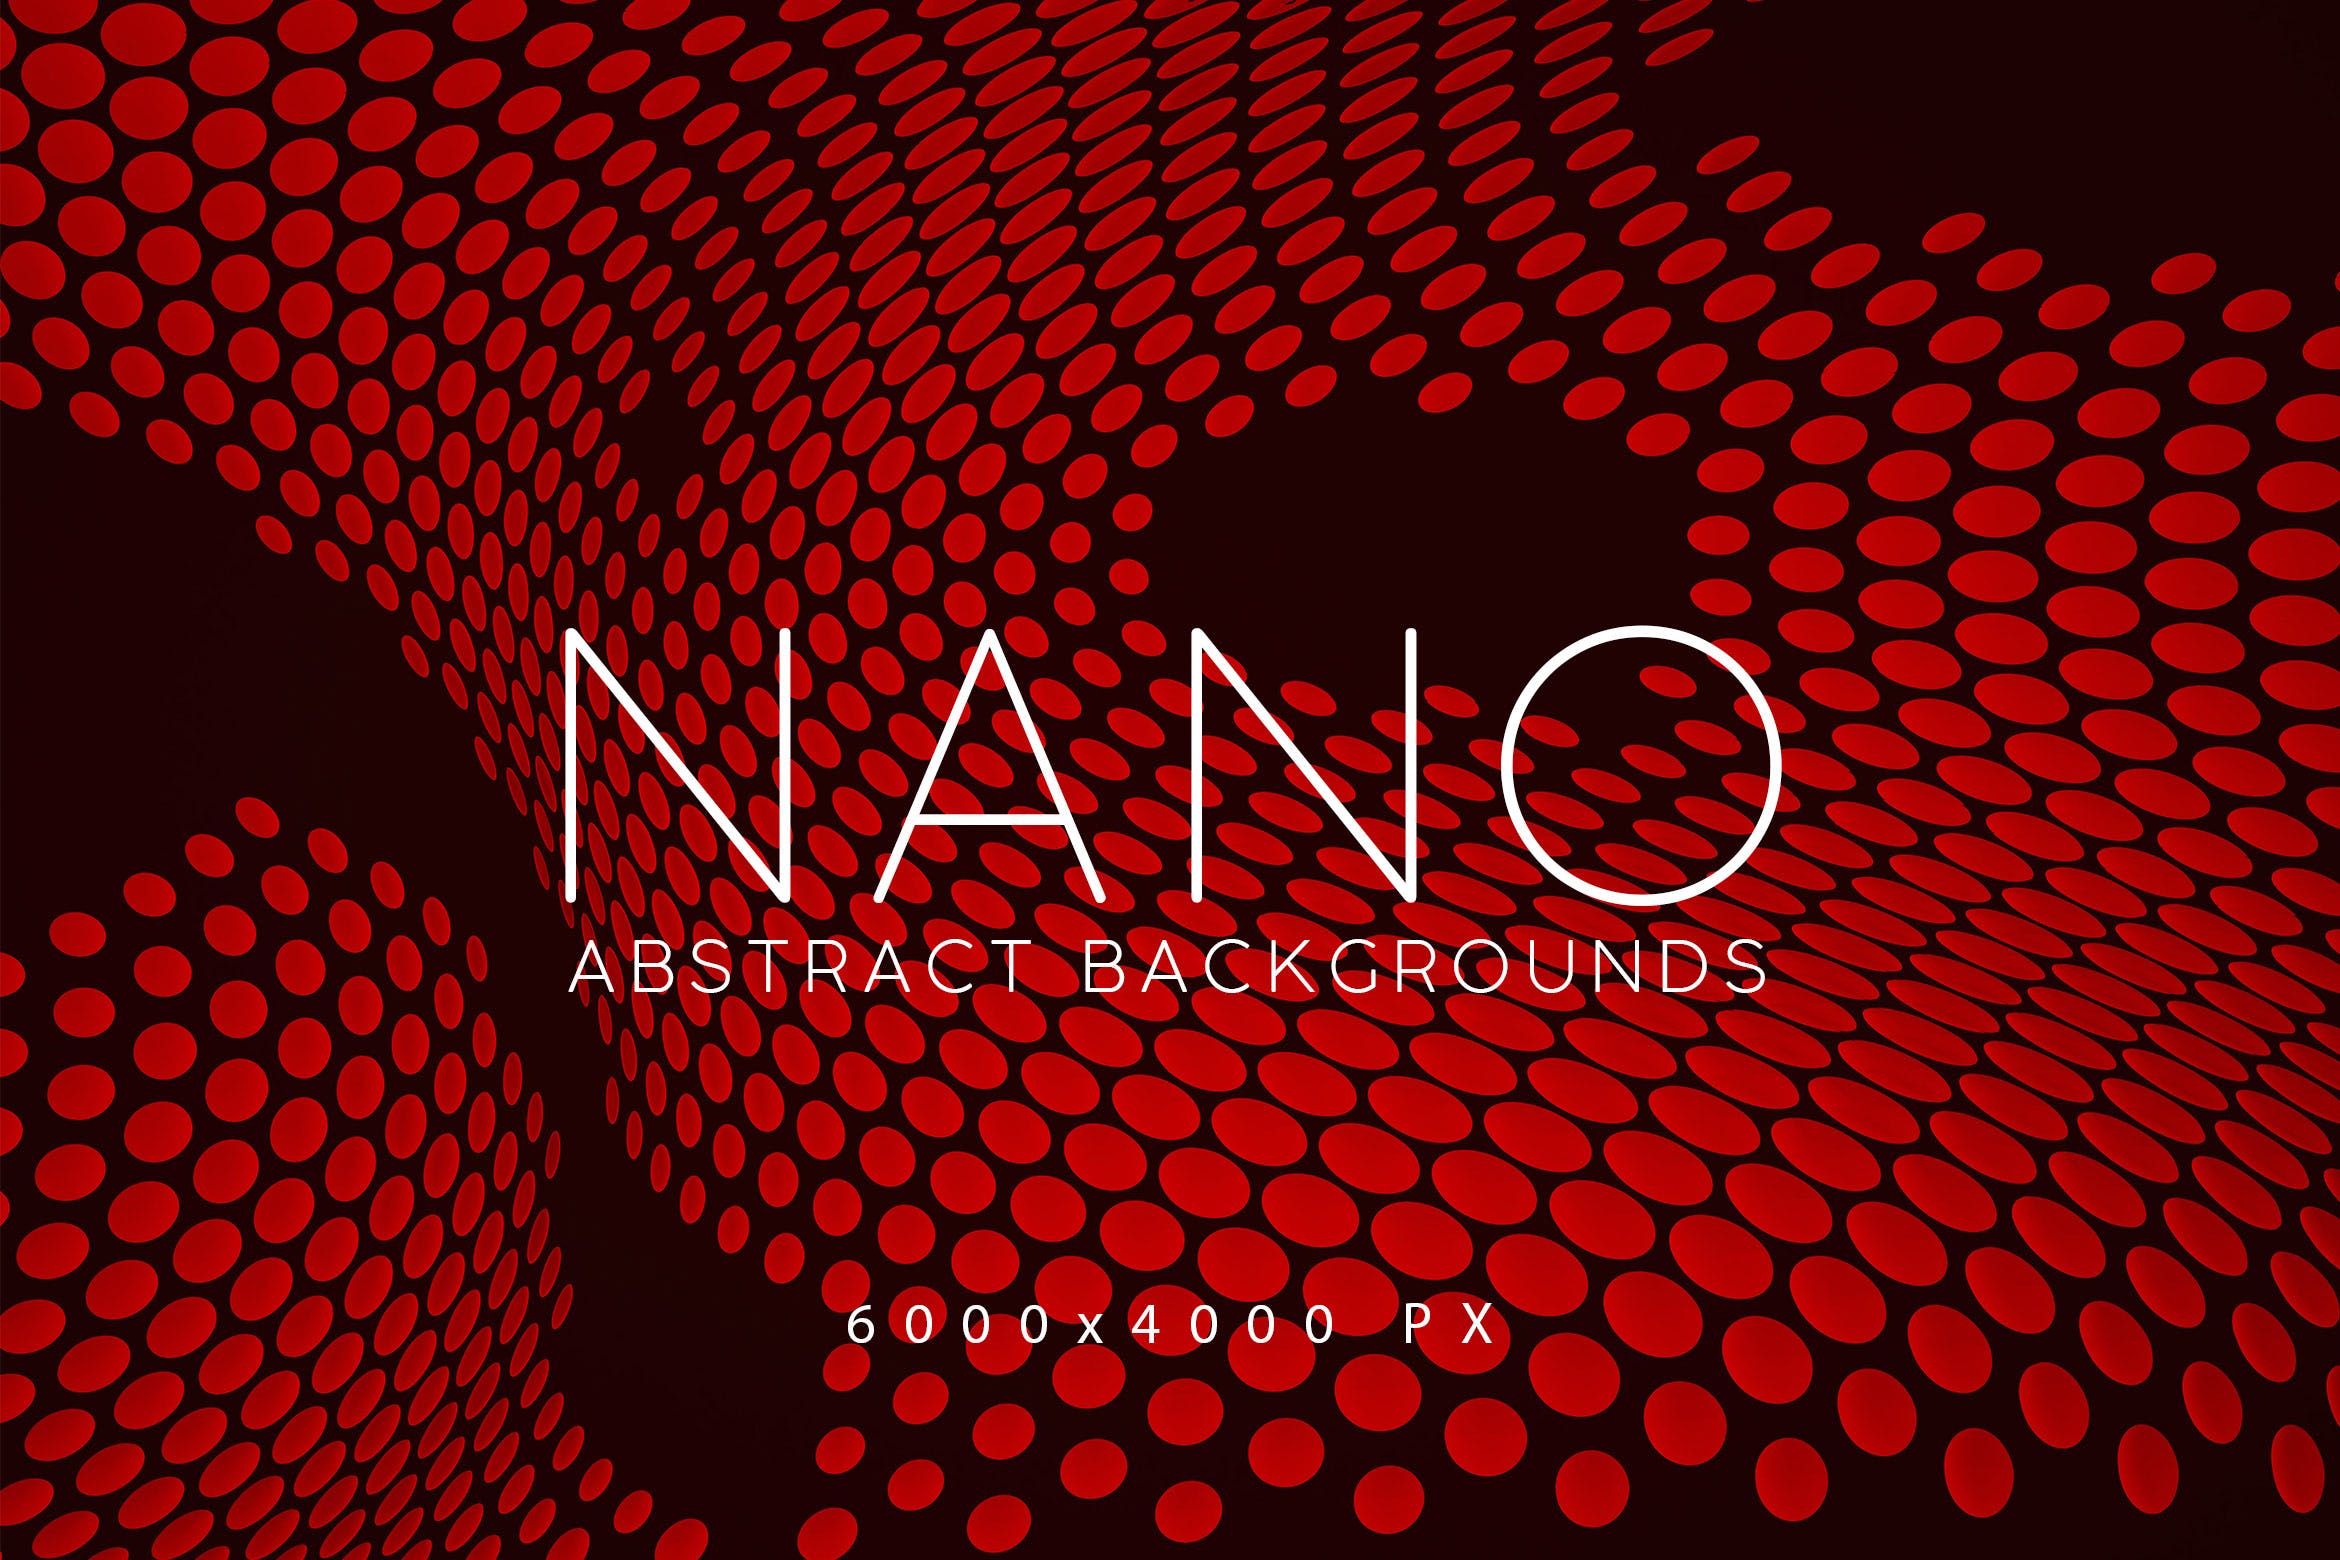 超高清分辨率抽象纳米图形背景素材 Nano Abstract Backgrounds插图